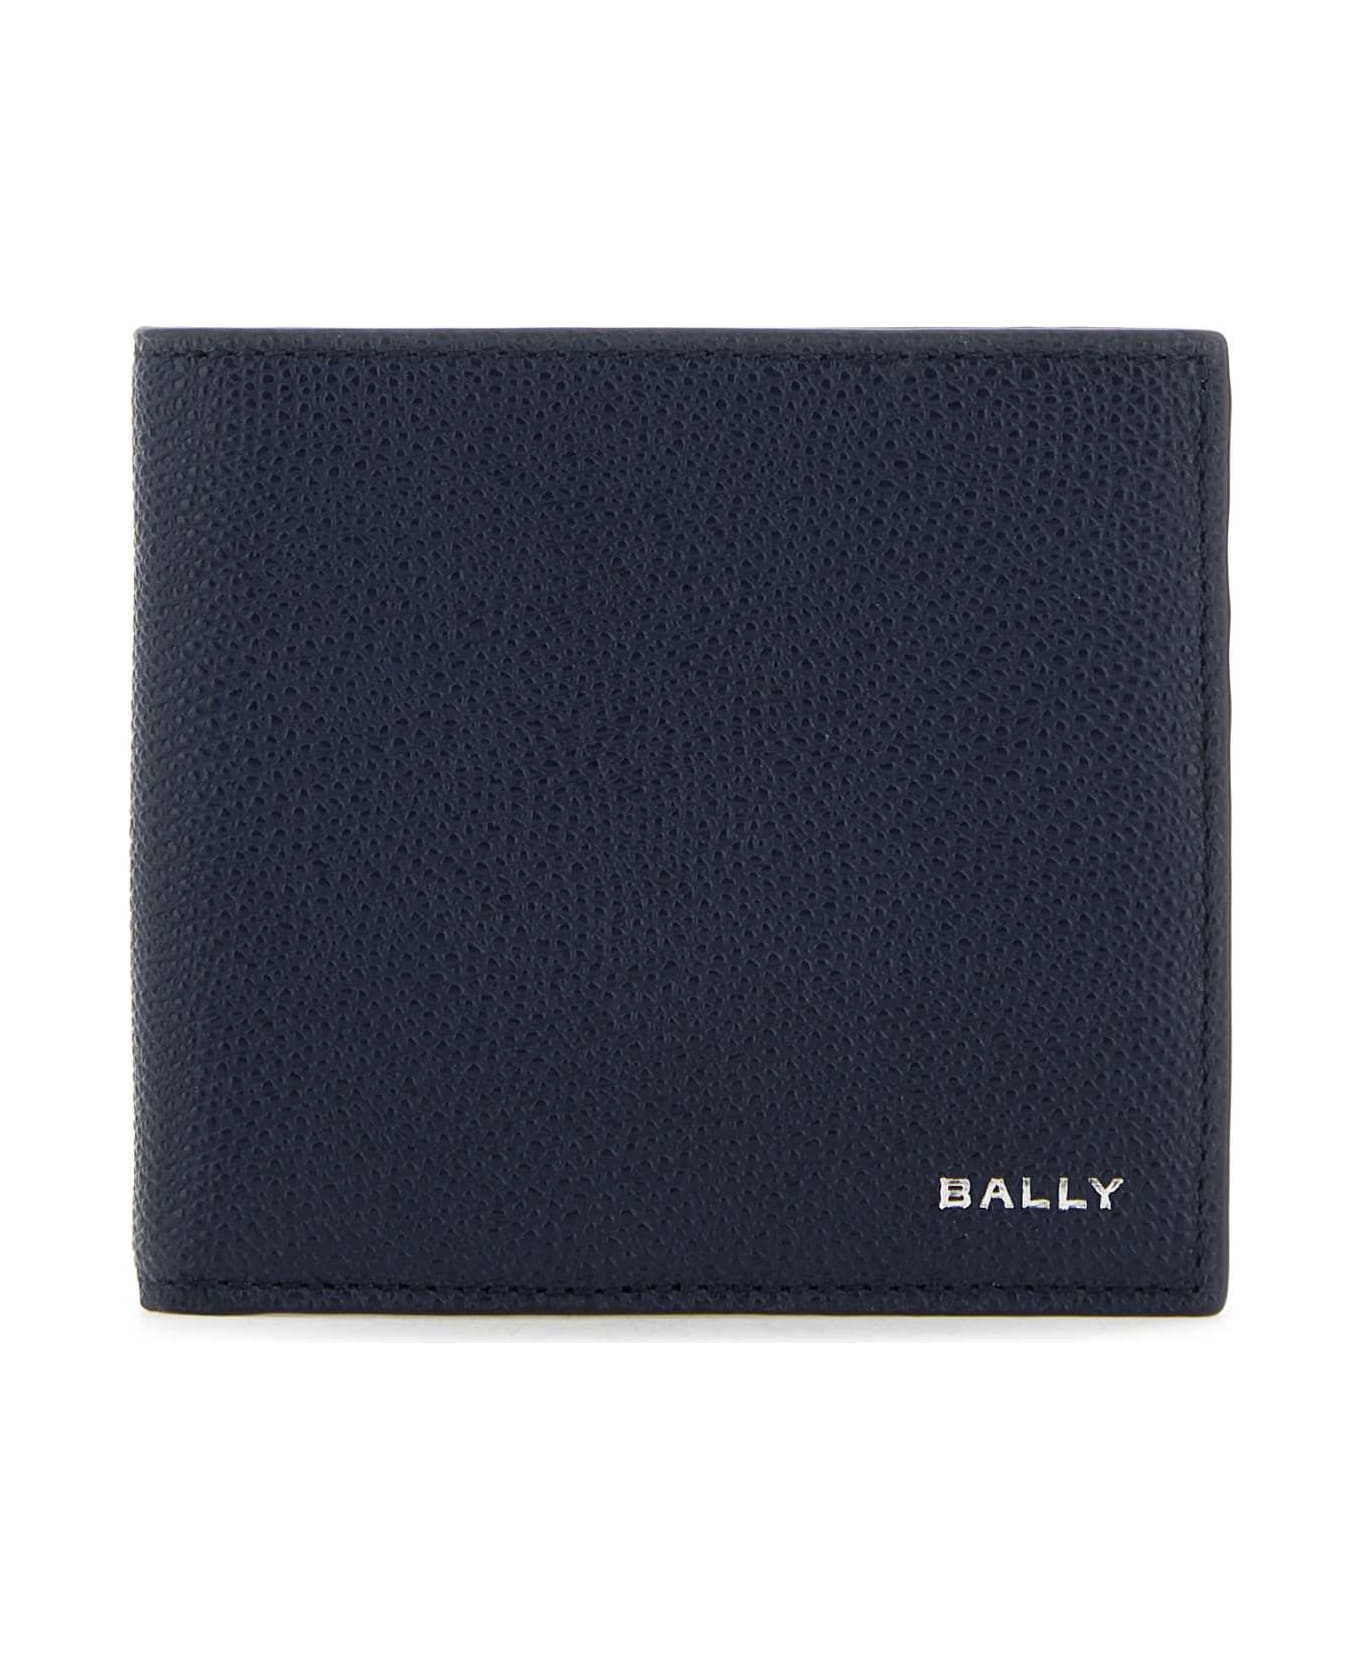 Bally Slate Leather Flag Wallet - MARINEBALEINEPAL